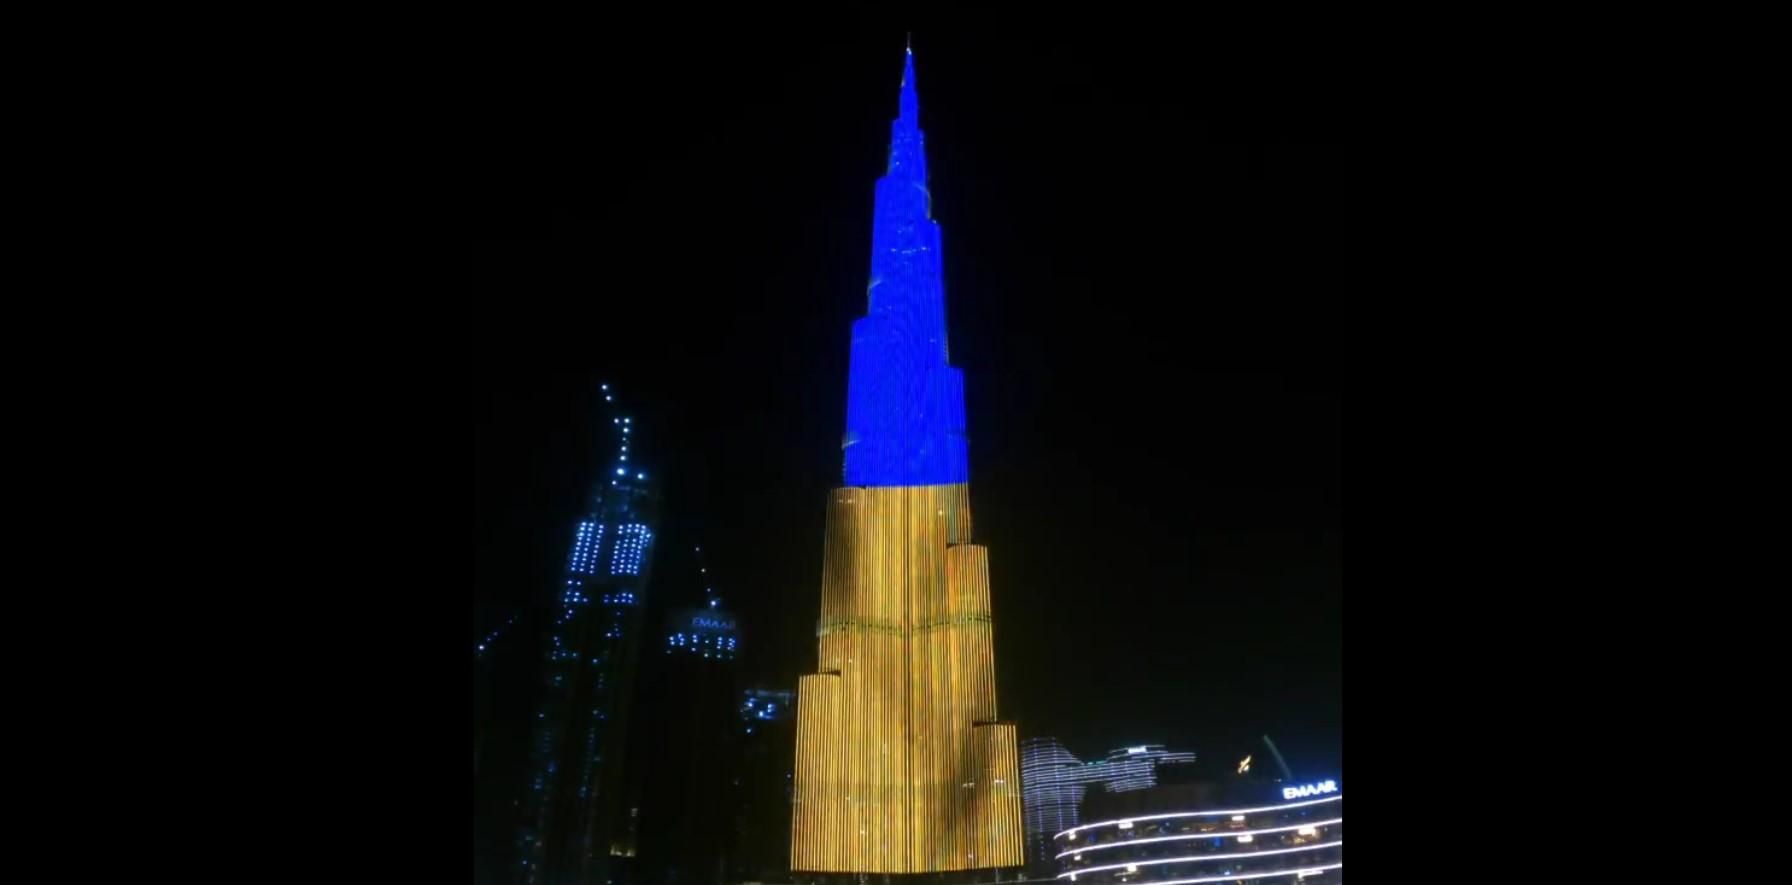 Бурдж Халифа засияла желто-голубым, – украинец рассказал, как празднуют День Независимости в ОАЭ